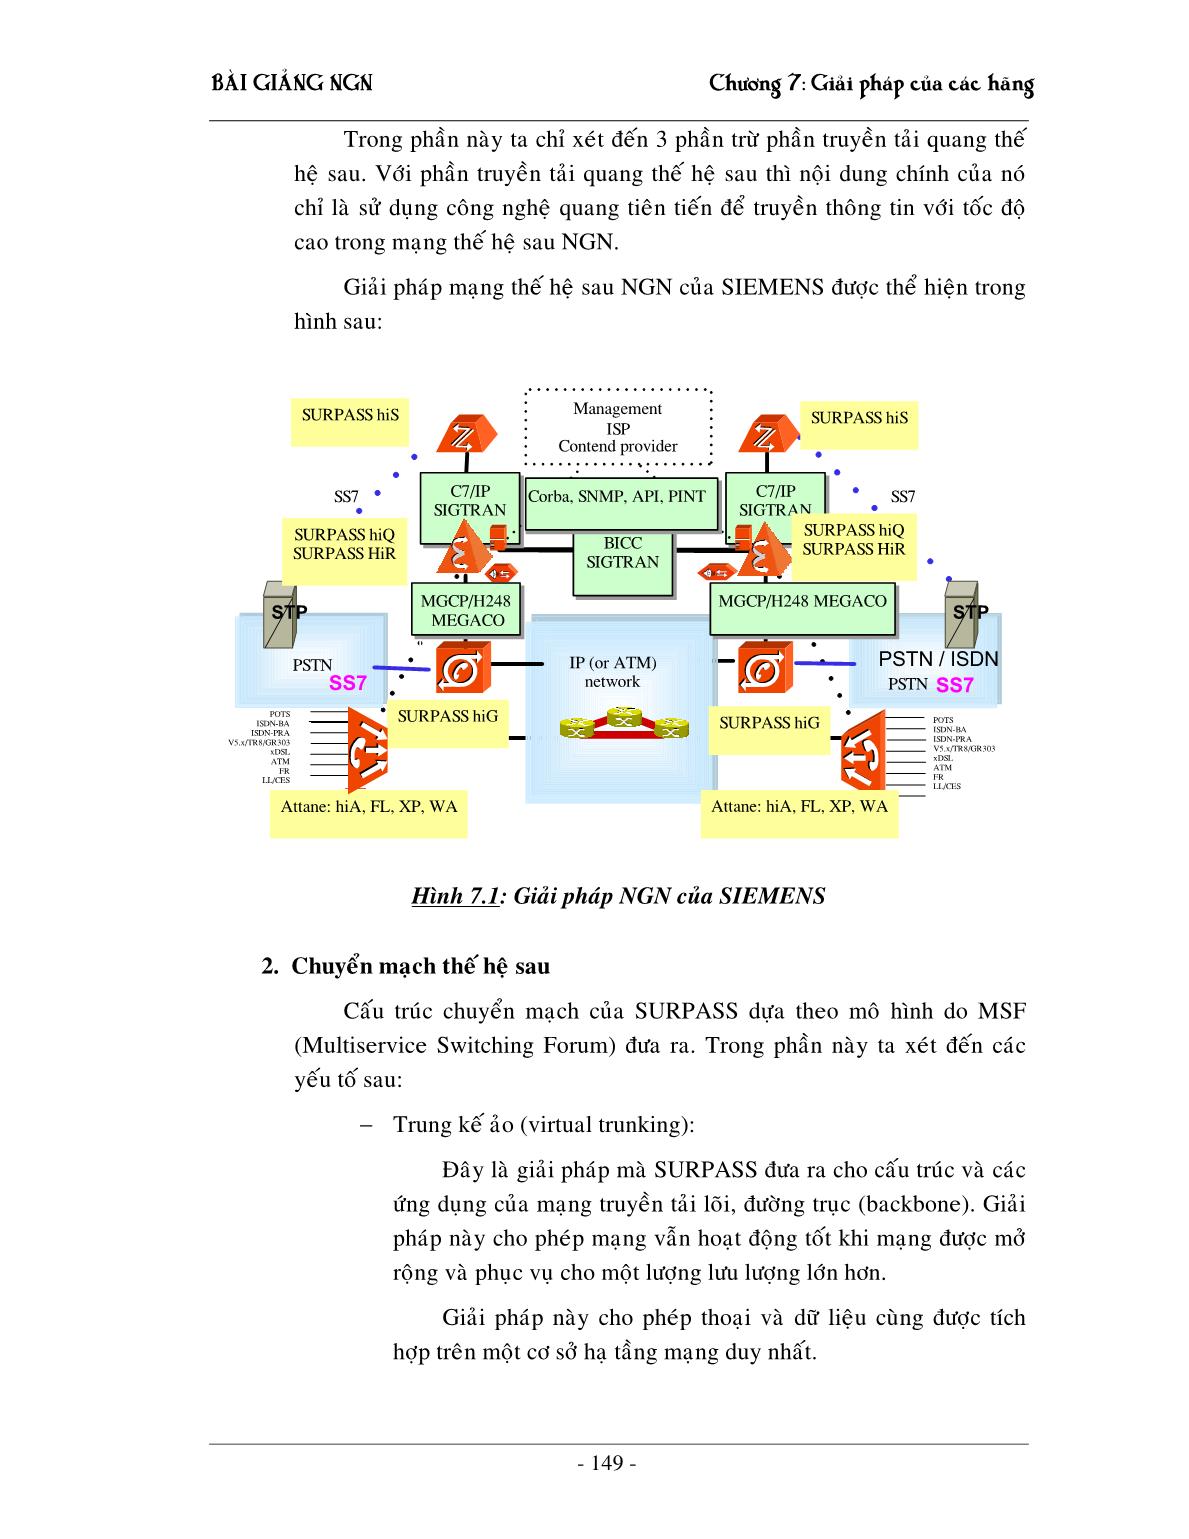 Bài giảng NGN - Chương 7: Giải pháp NGN của các hãng trang 2